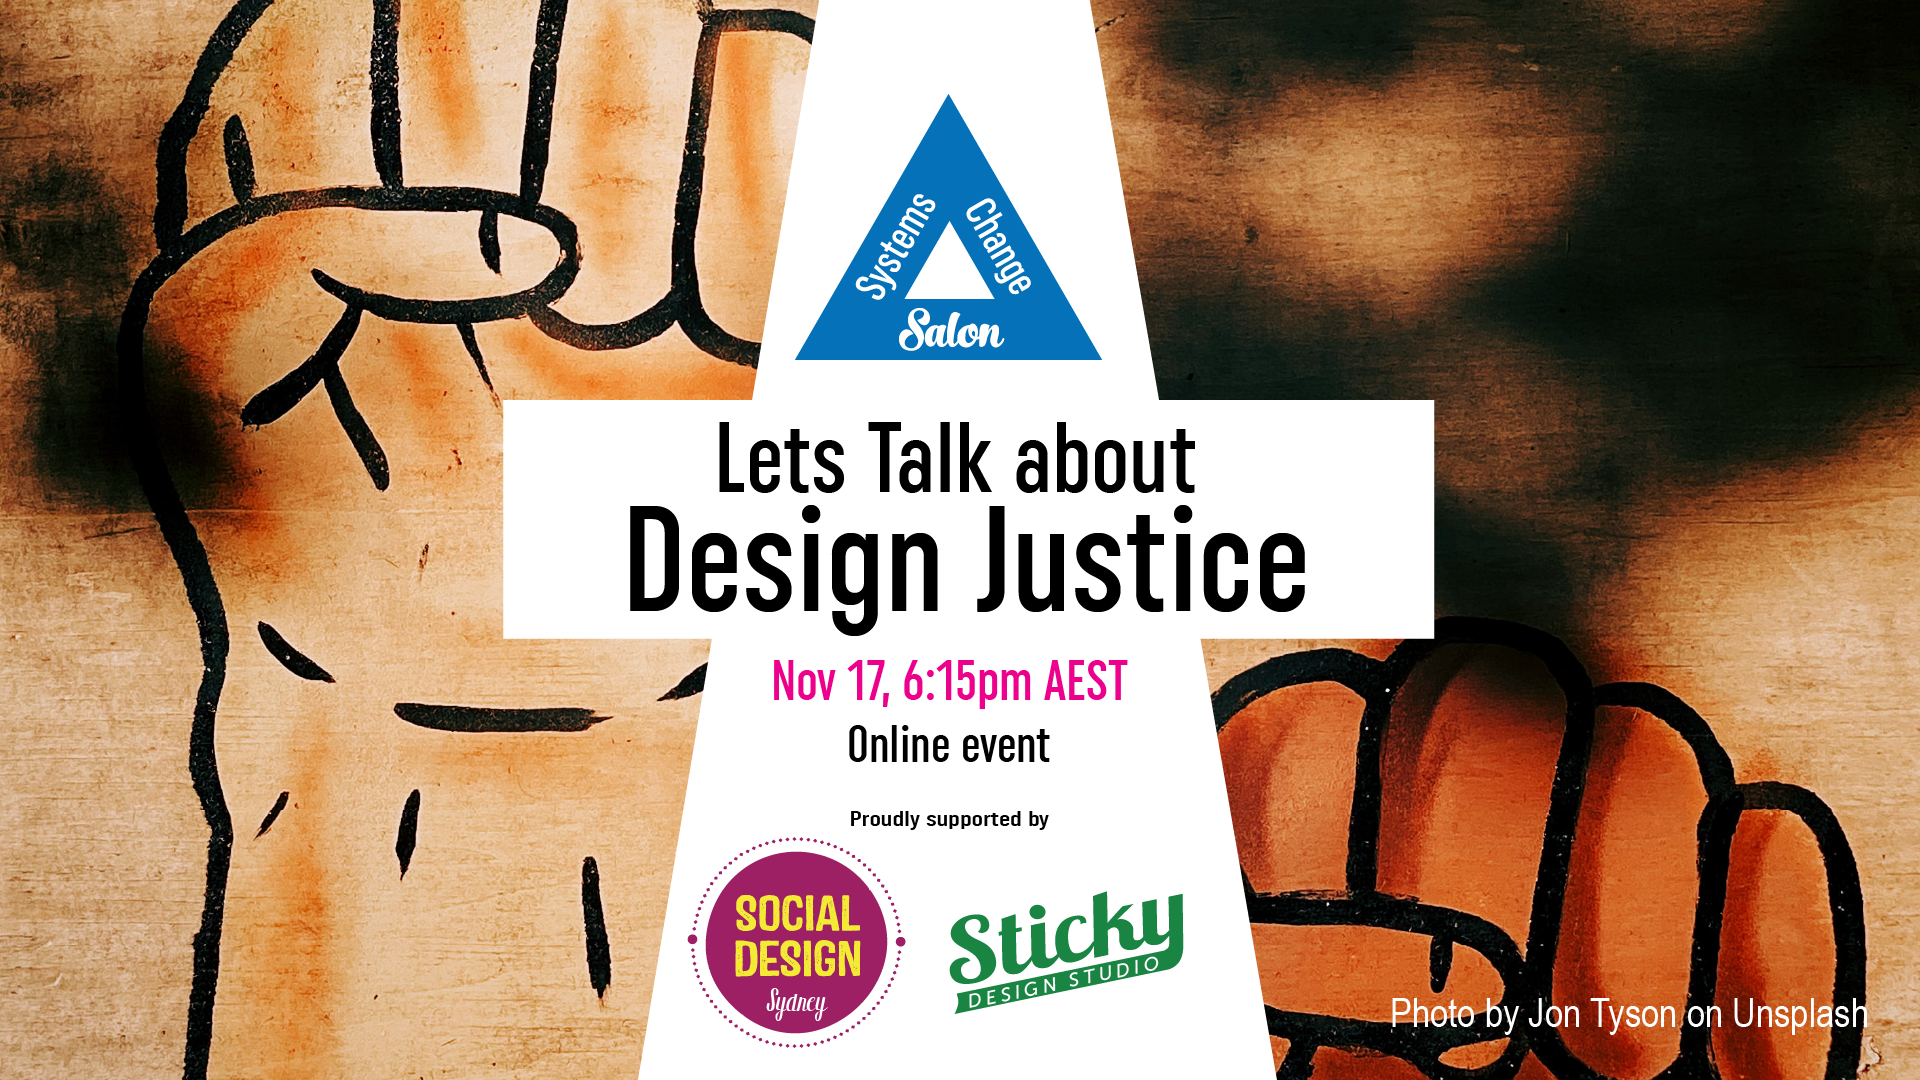 Lets talk about design justice flyer